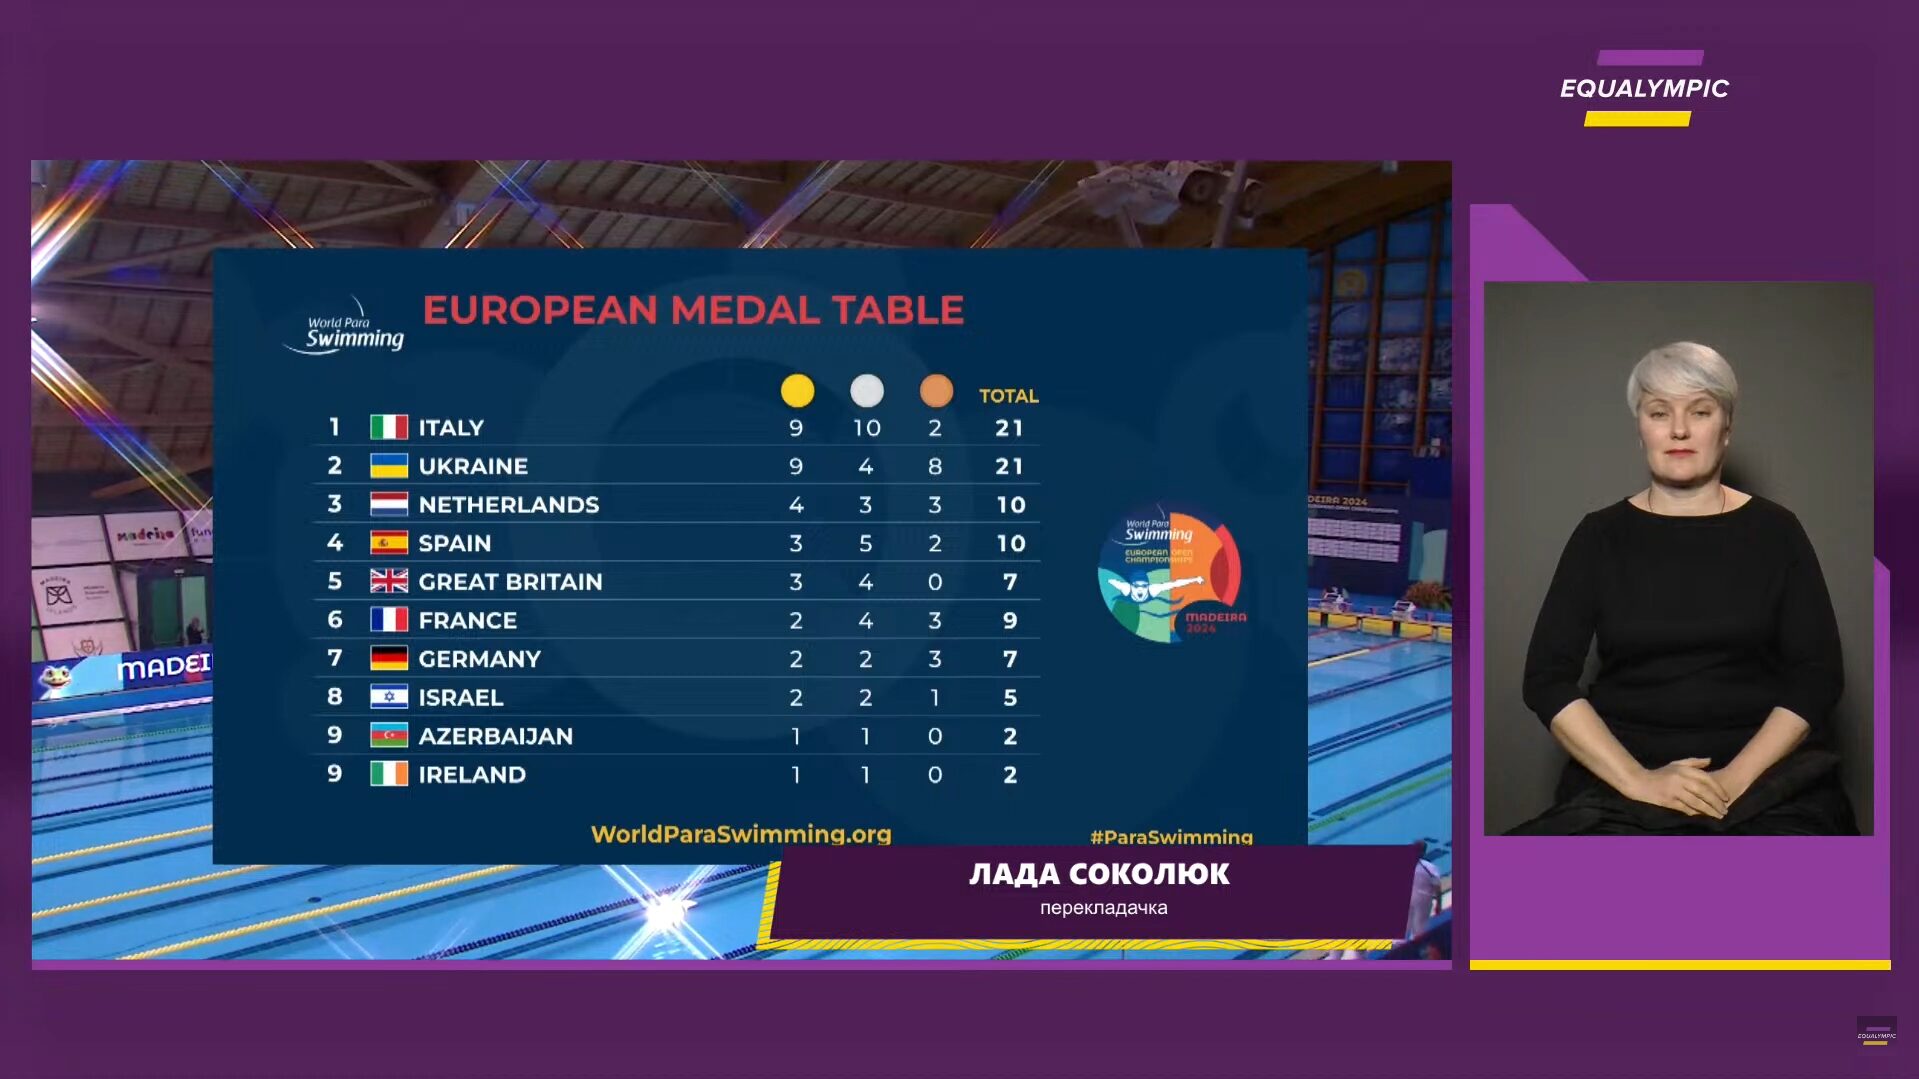 Результати турнірної таблиці на чемпіонаті Європи з параплавання. Фото: Equalimpic